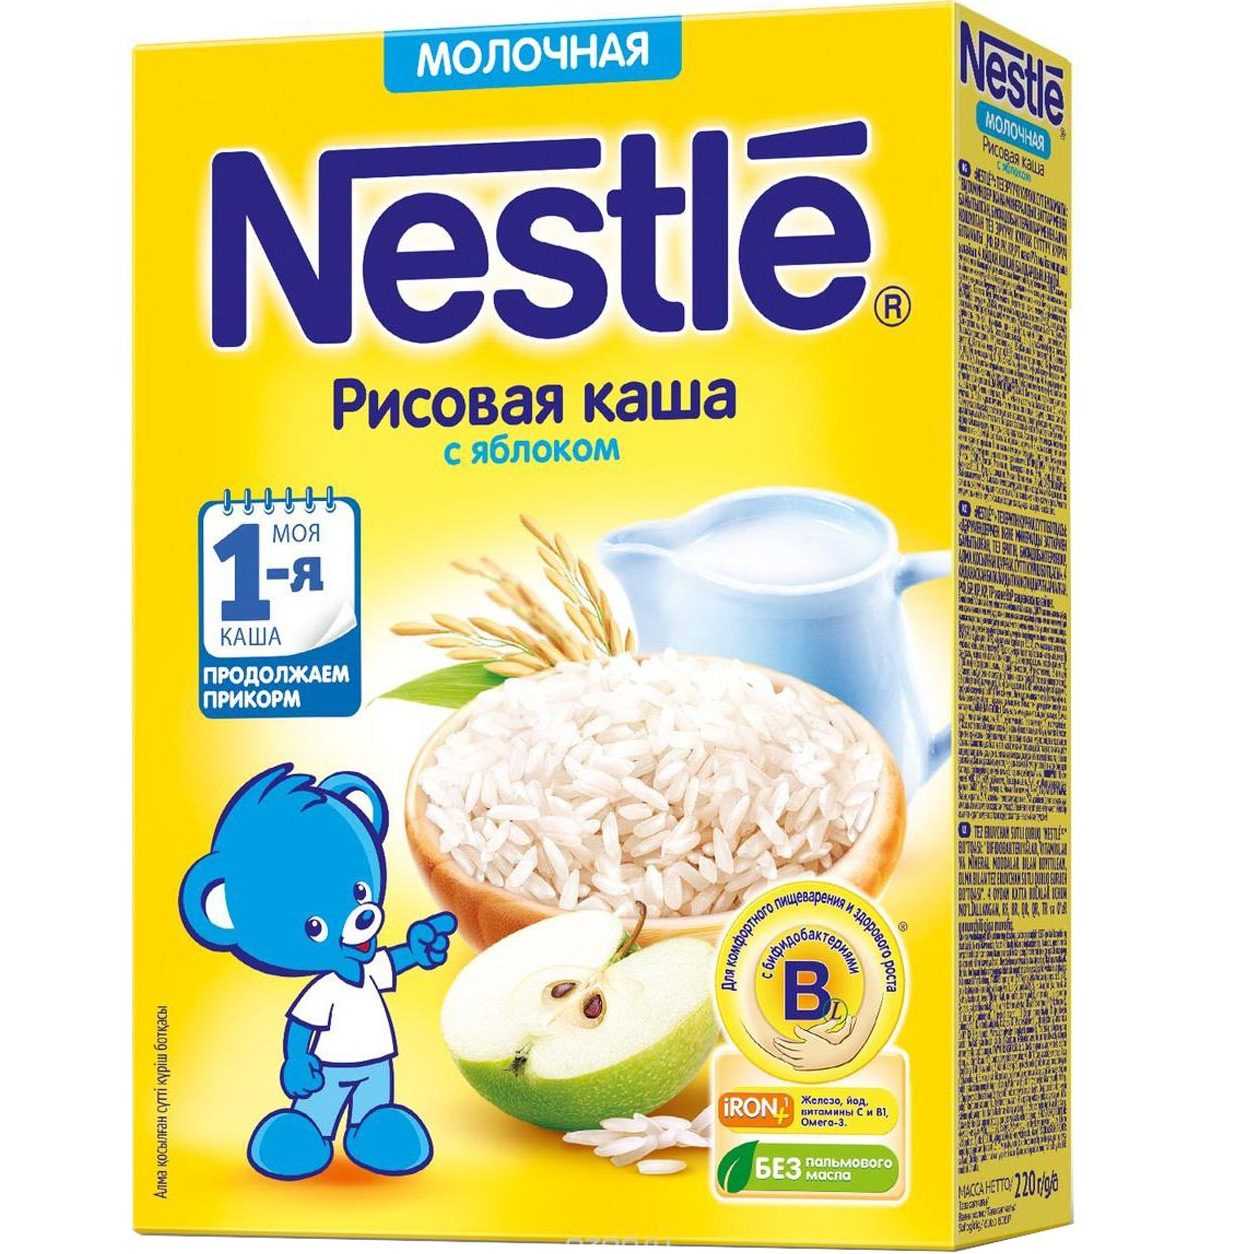 سرلاک (غذای کمکی ) شیر و برنج با سیب نستله Nestle